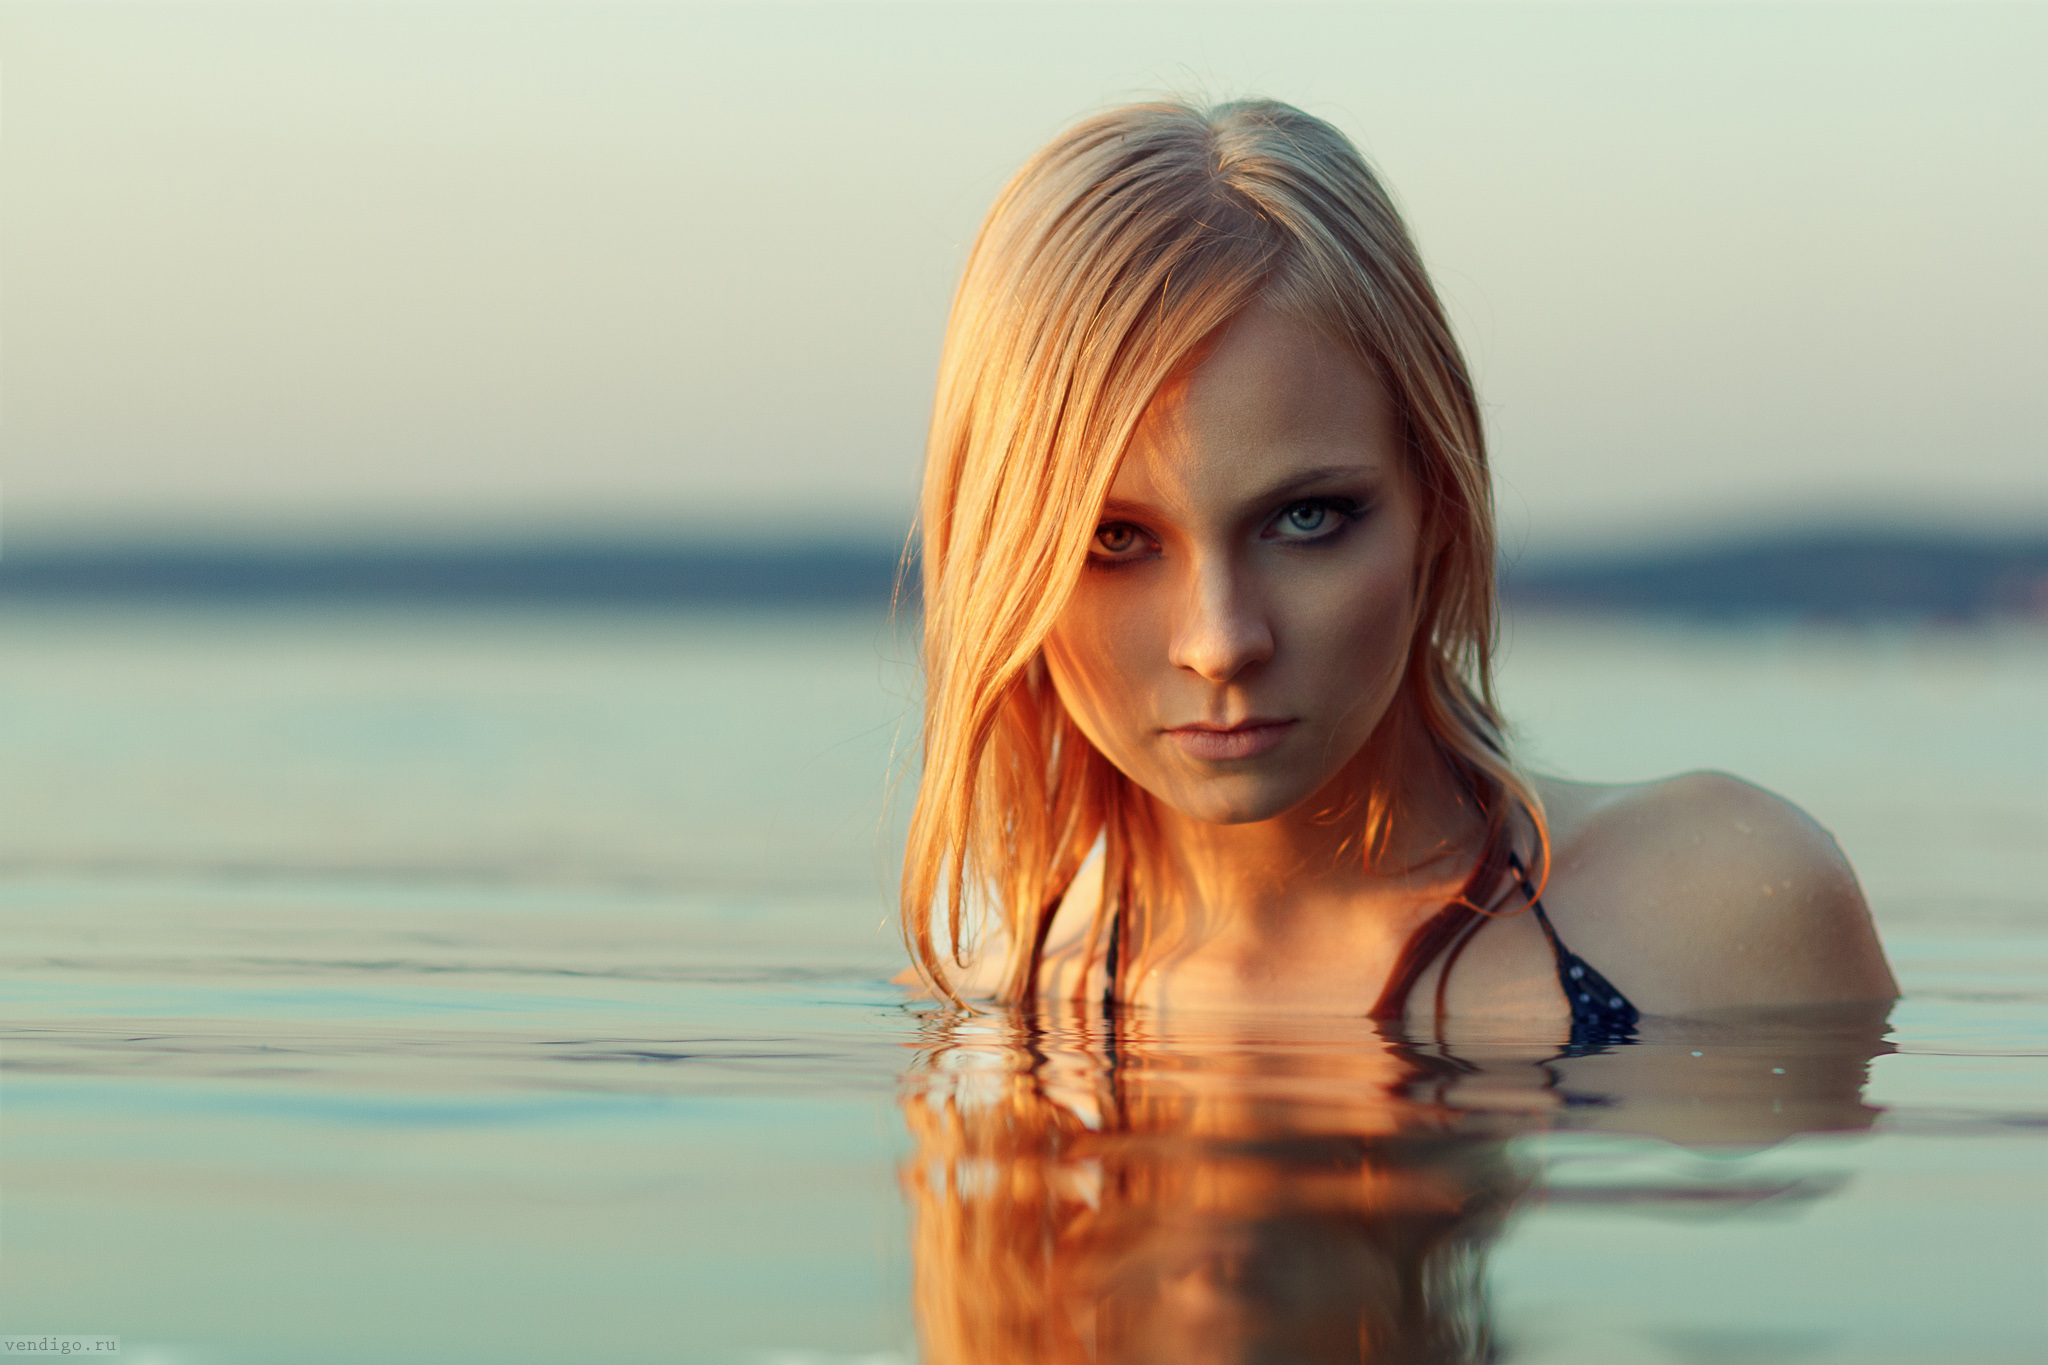 Evgeniy Bulatov Blonde Blue Eyes Depth Of Field Looking At Viewer Blurred Model Women Outdoors Water 2048x1365